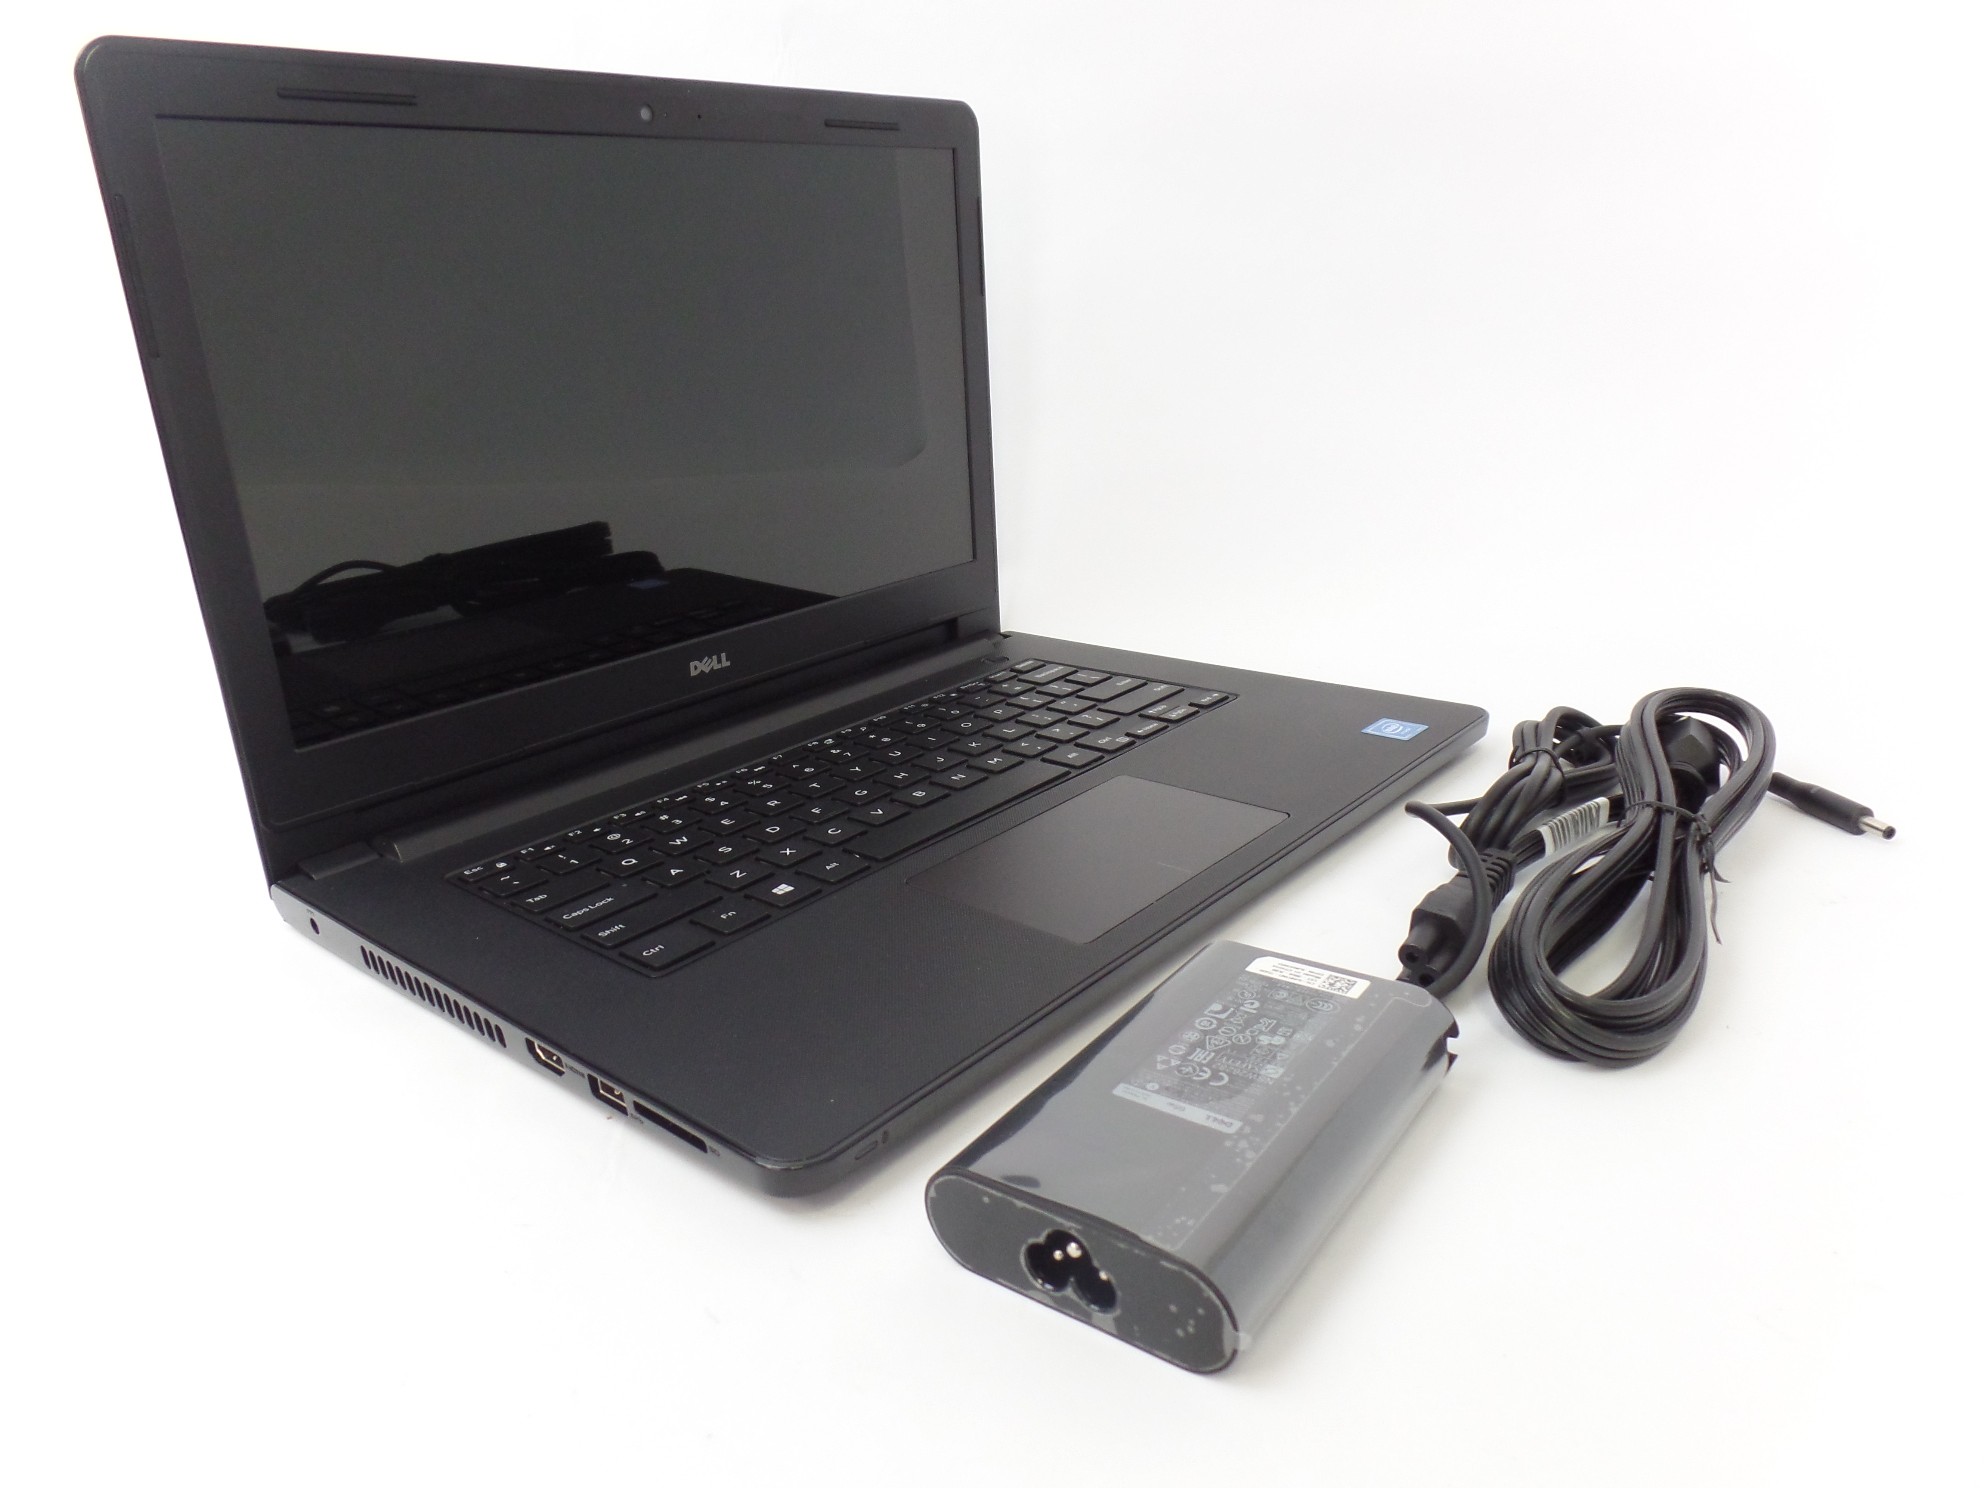 Dell Inspiron 14 3452 14 Hd Celeron N3050 1 6ghz 2gb 32gb Emmc W10h Laptop Sd